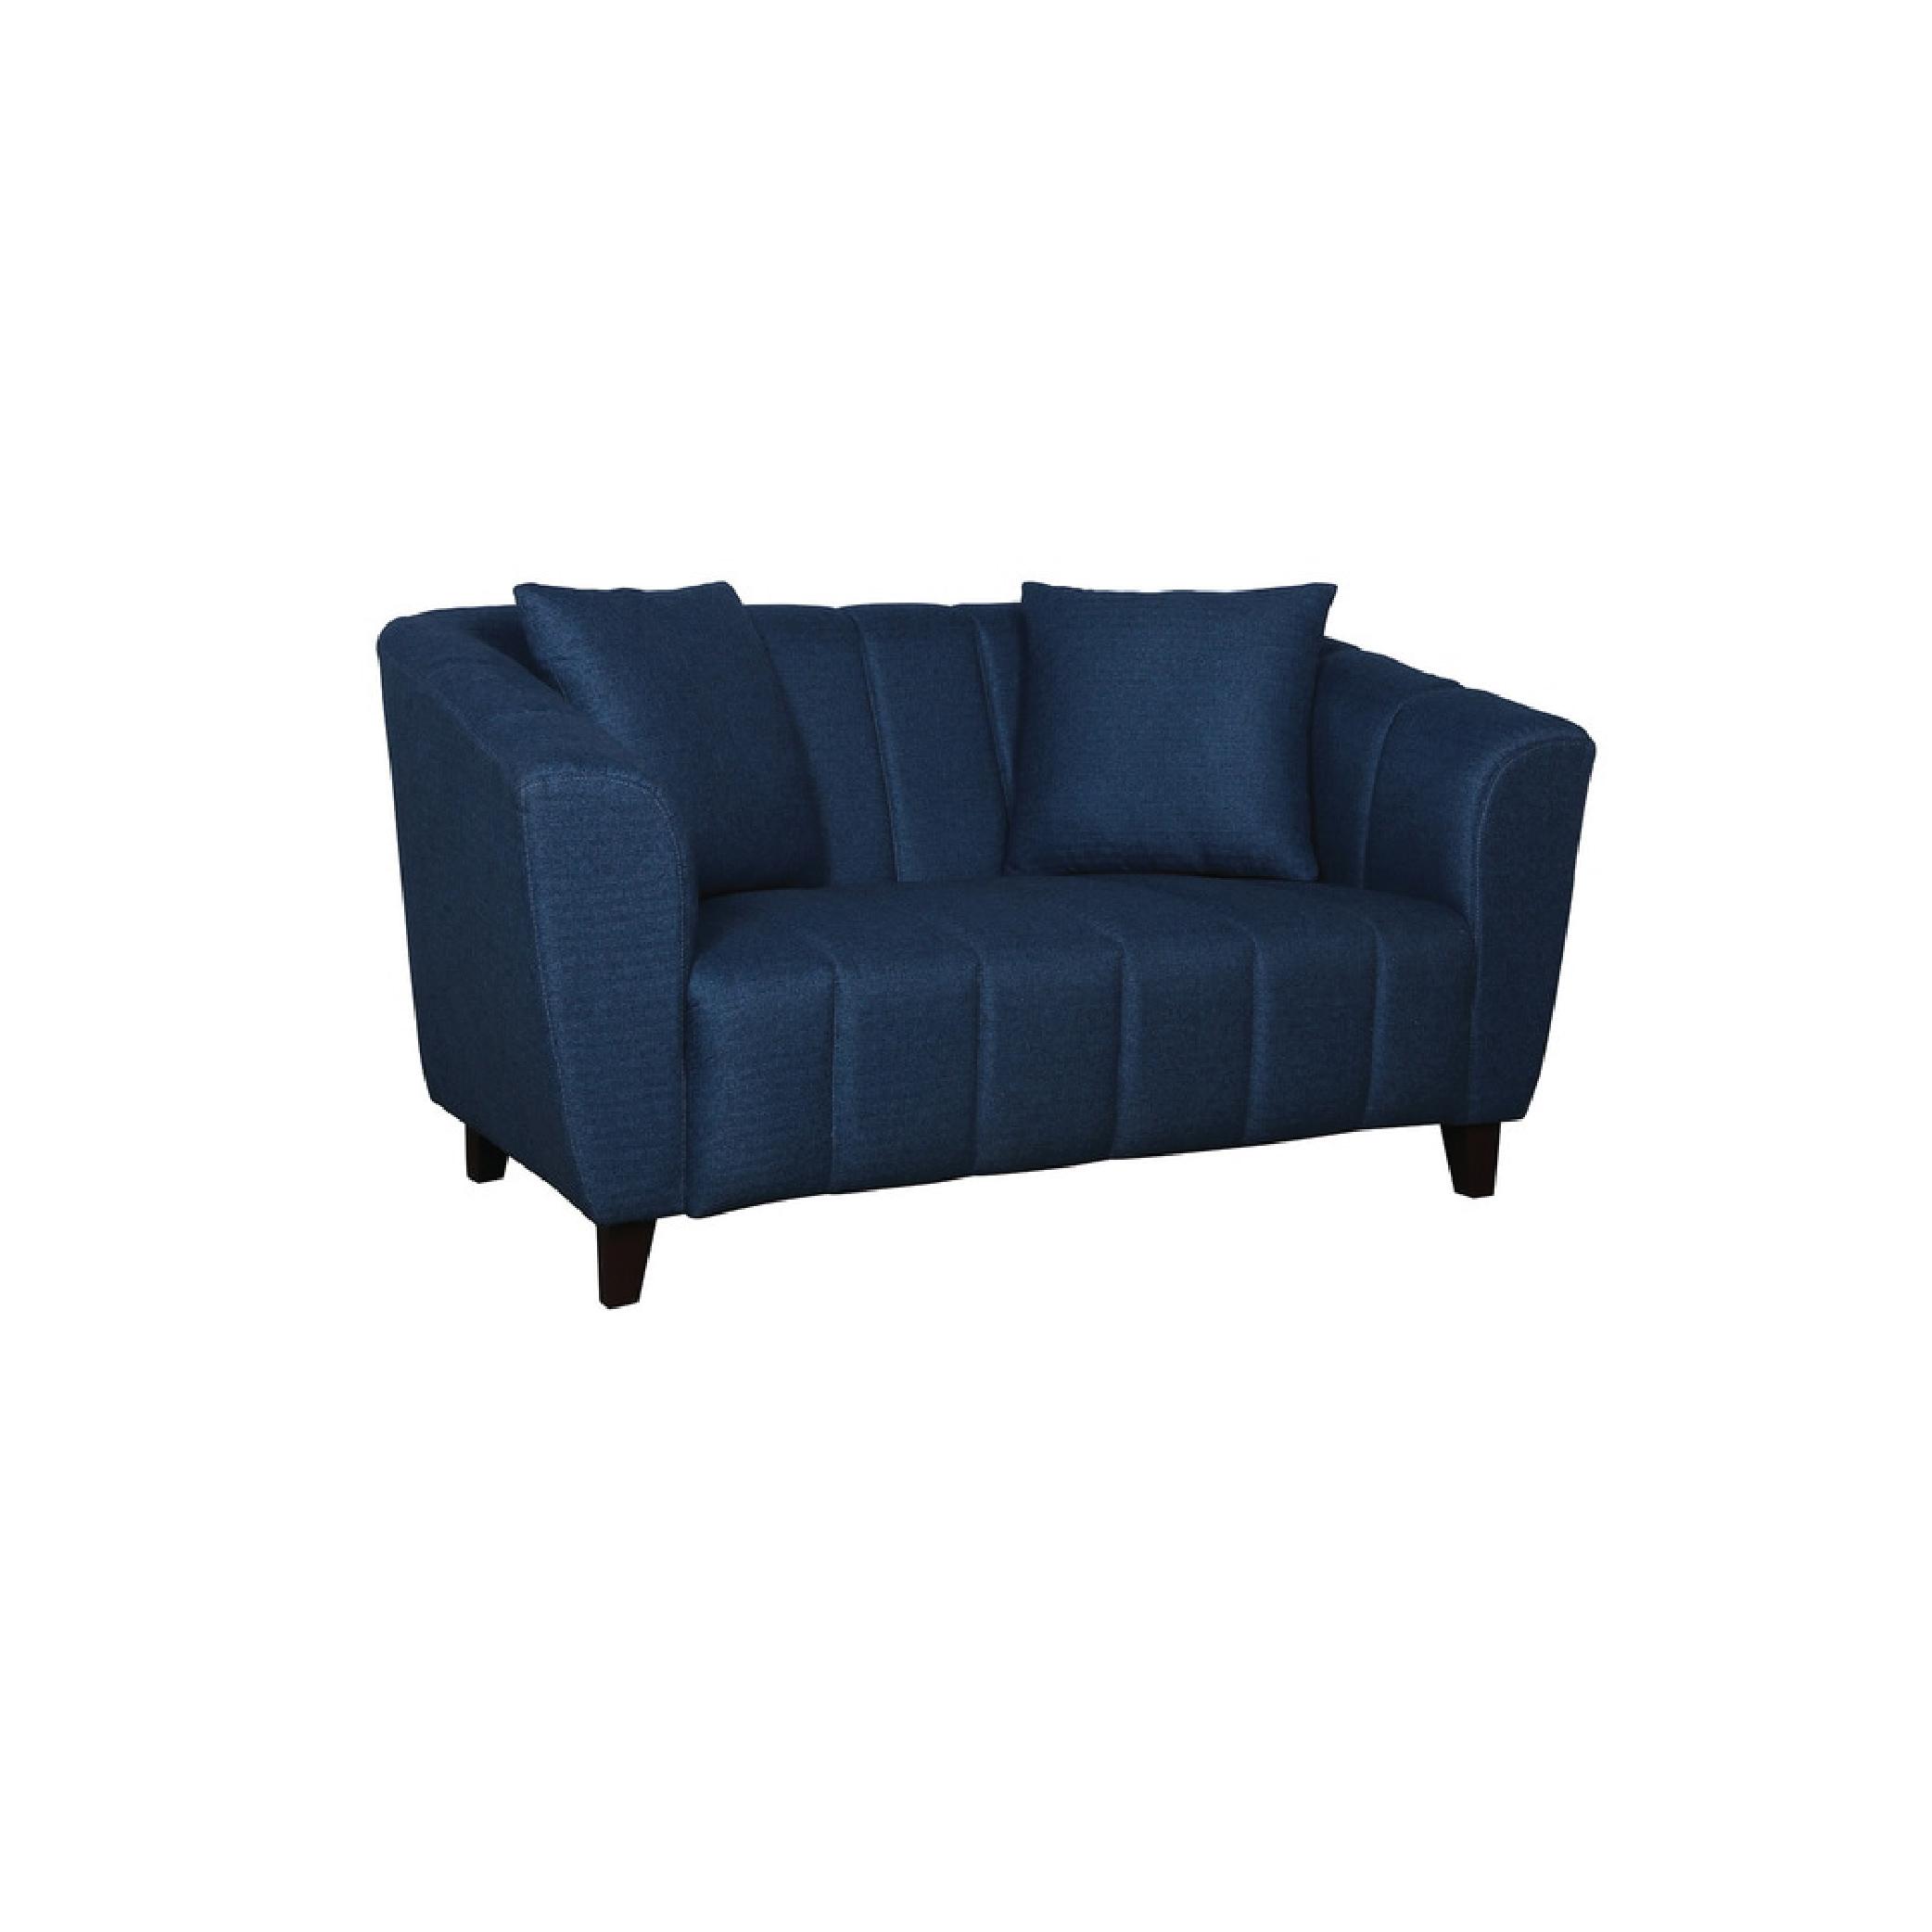 Bobbio Two Seater Sofa in Blue Colour